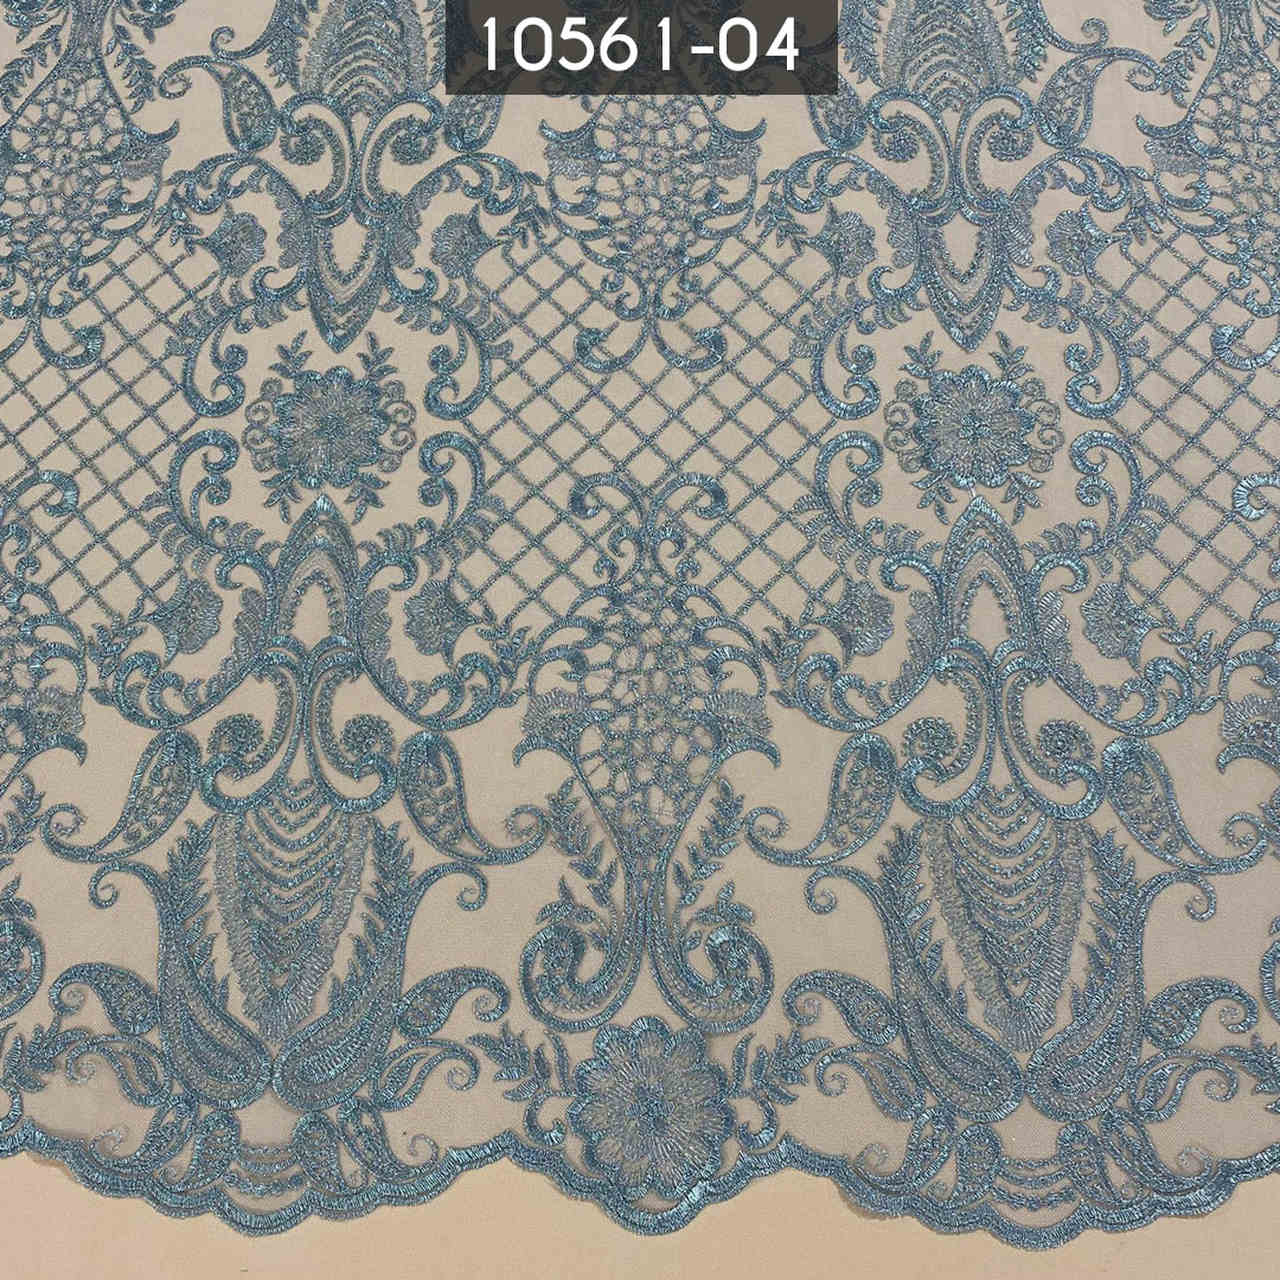 Retalho de Tecido Tule Renda Em Arabescos 10561-04 Azul 1,00 x 1,35MT